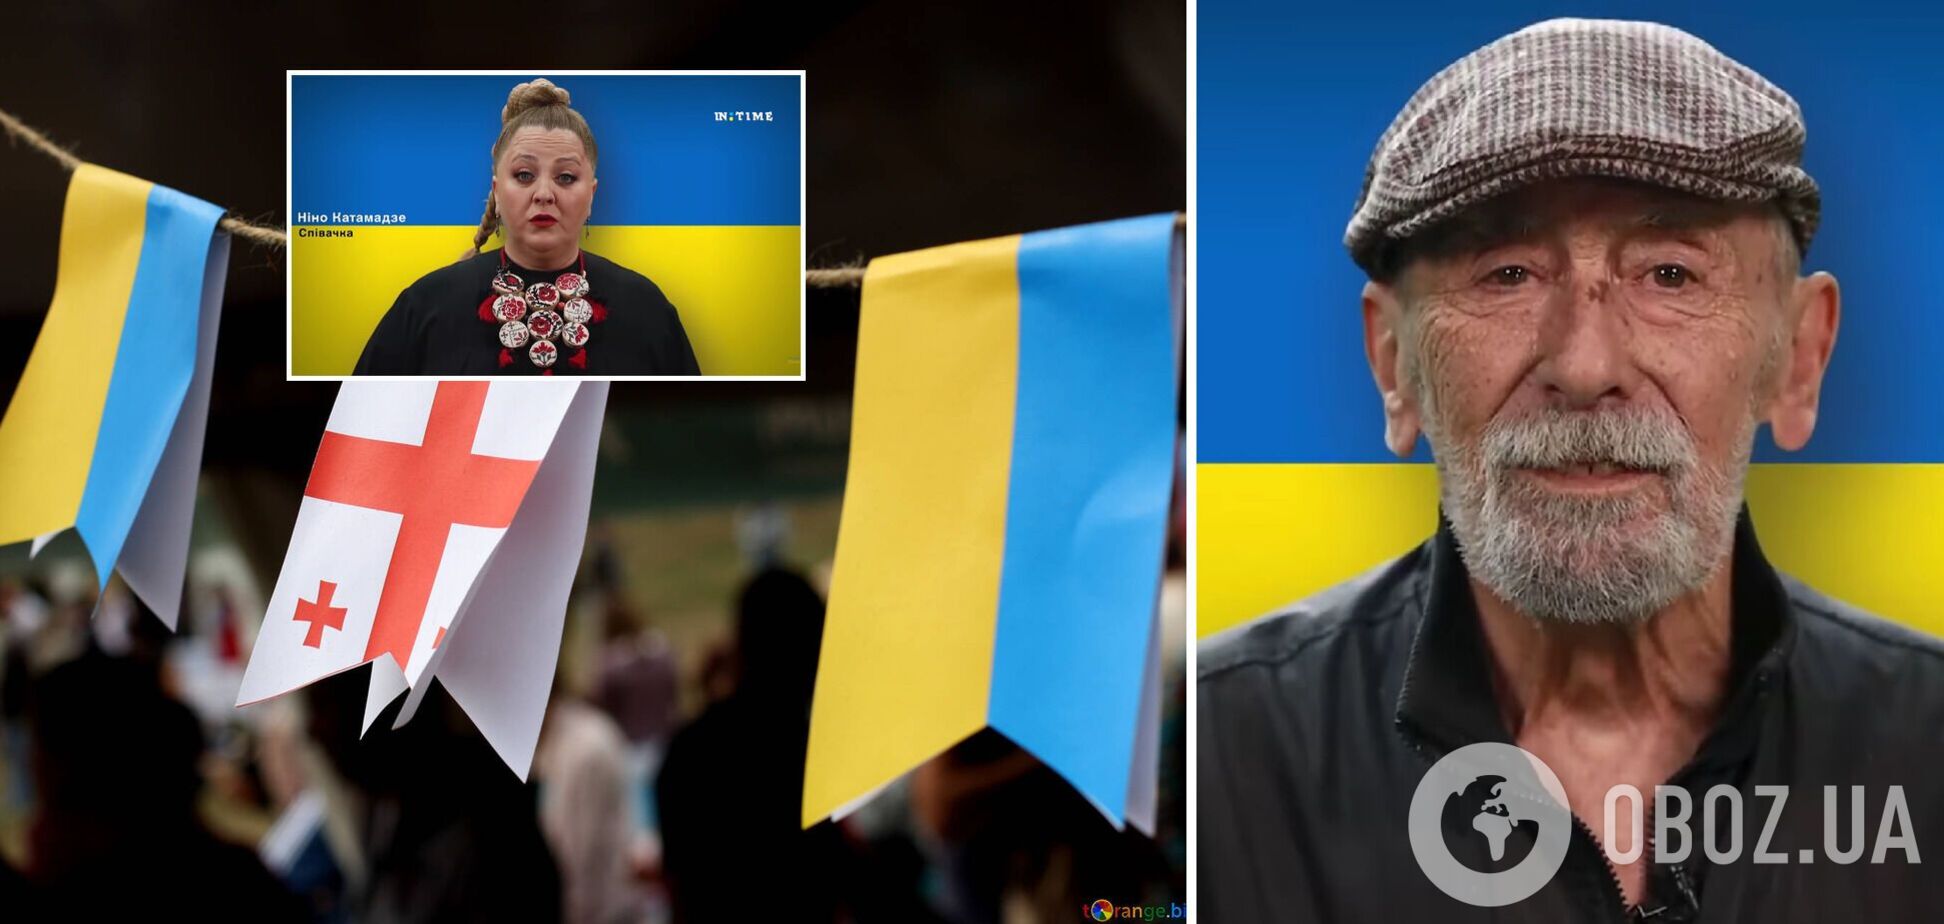 Ваша перемога – це і наша перемога: відомі грузинські діячі записали потужне відео на підтримку України